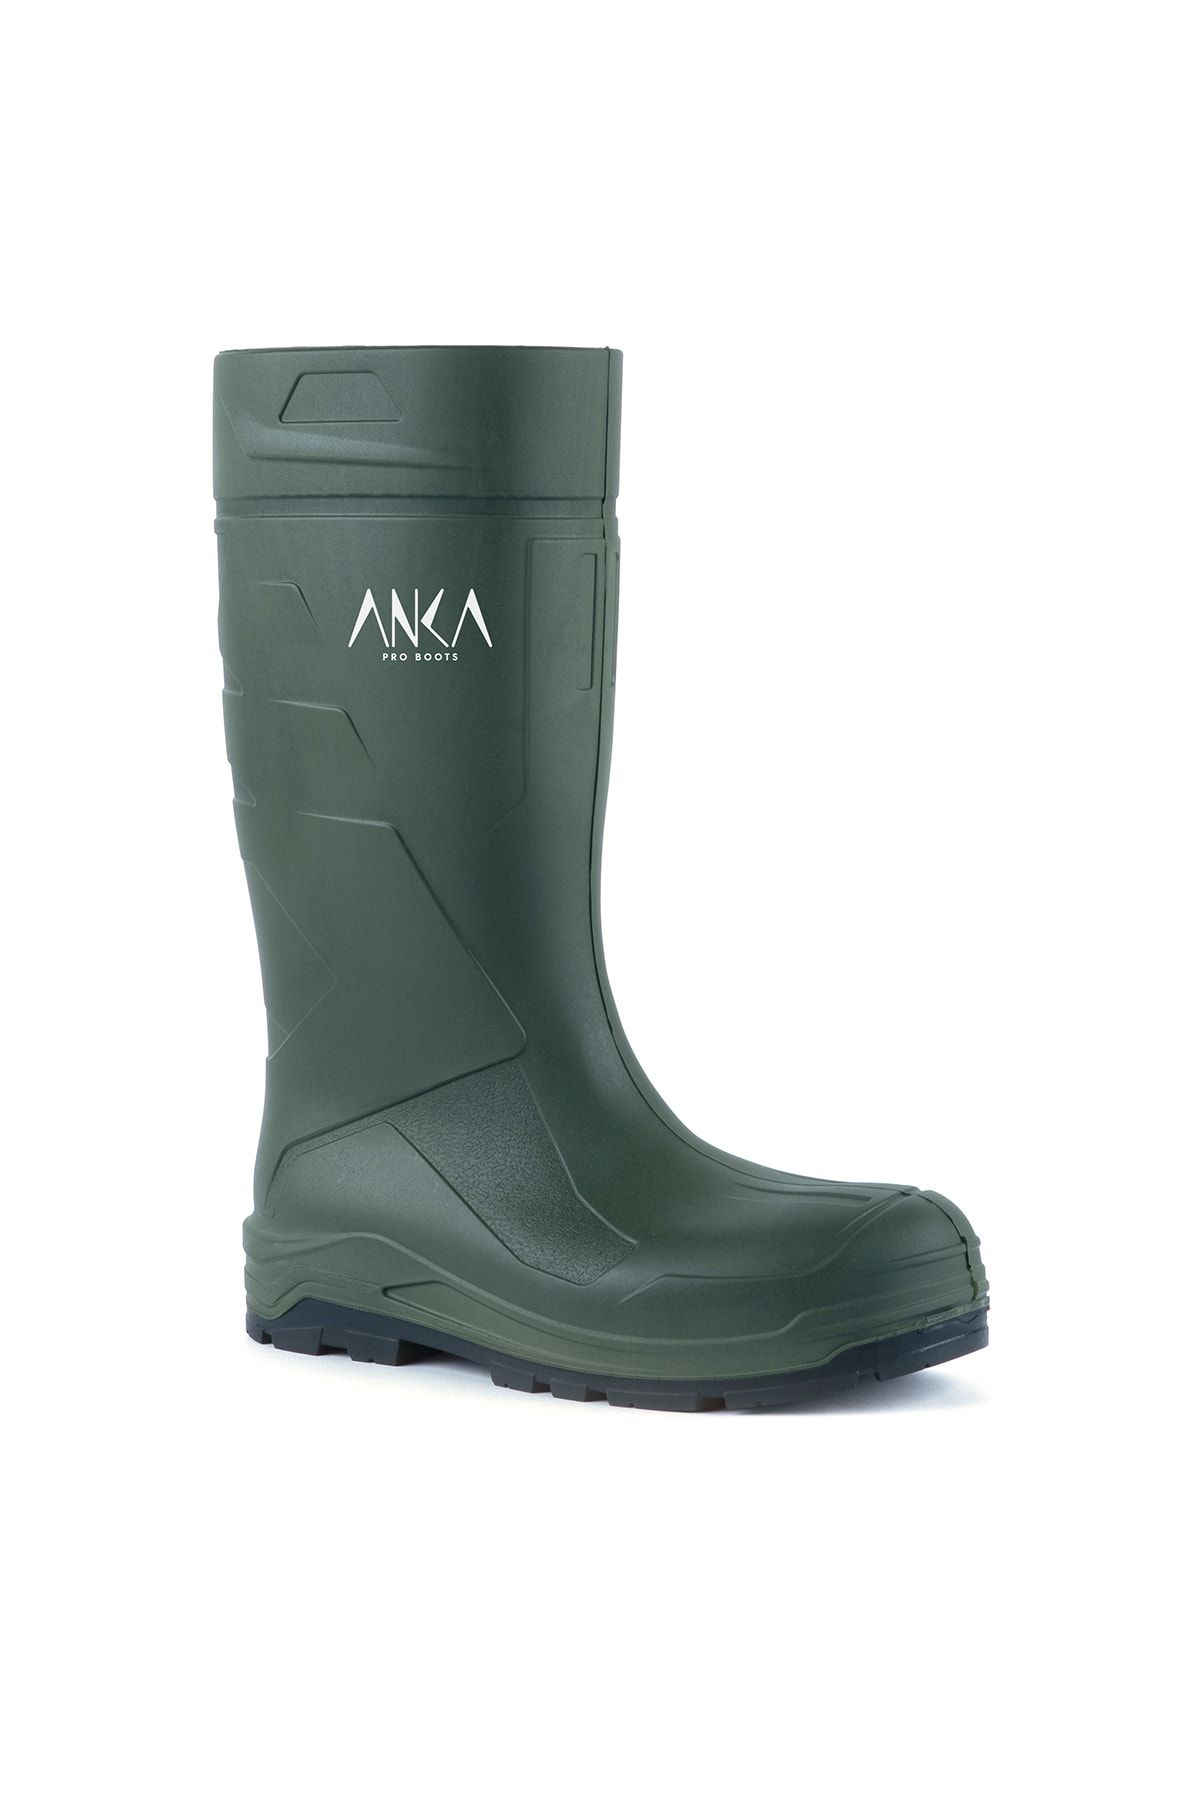 Anka Pro Boots 904 S5